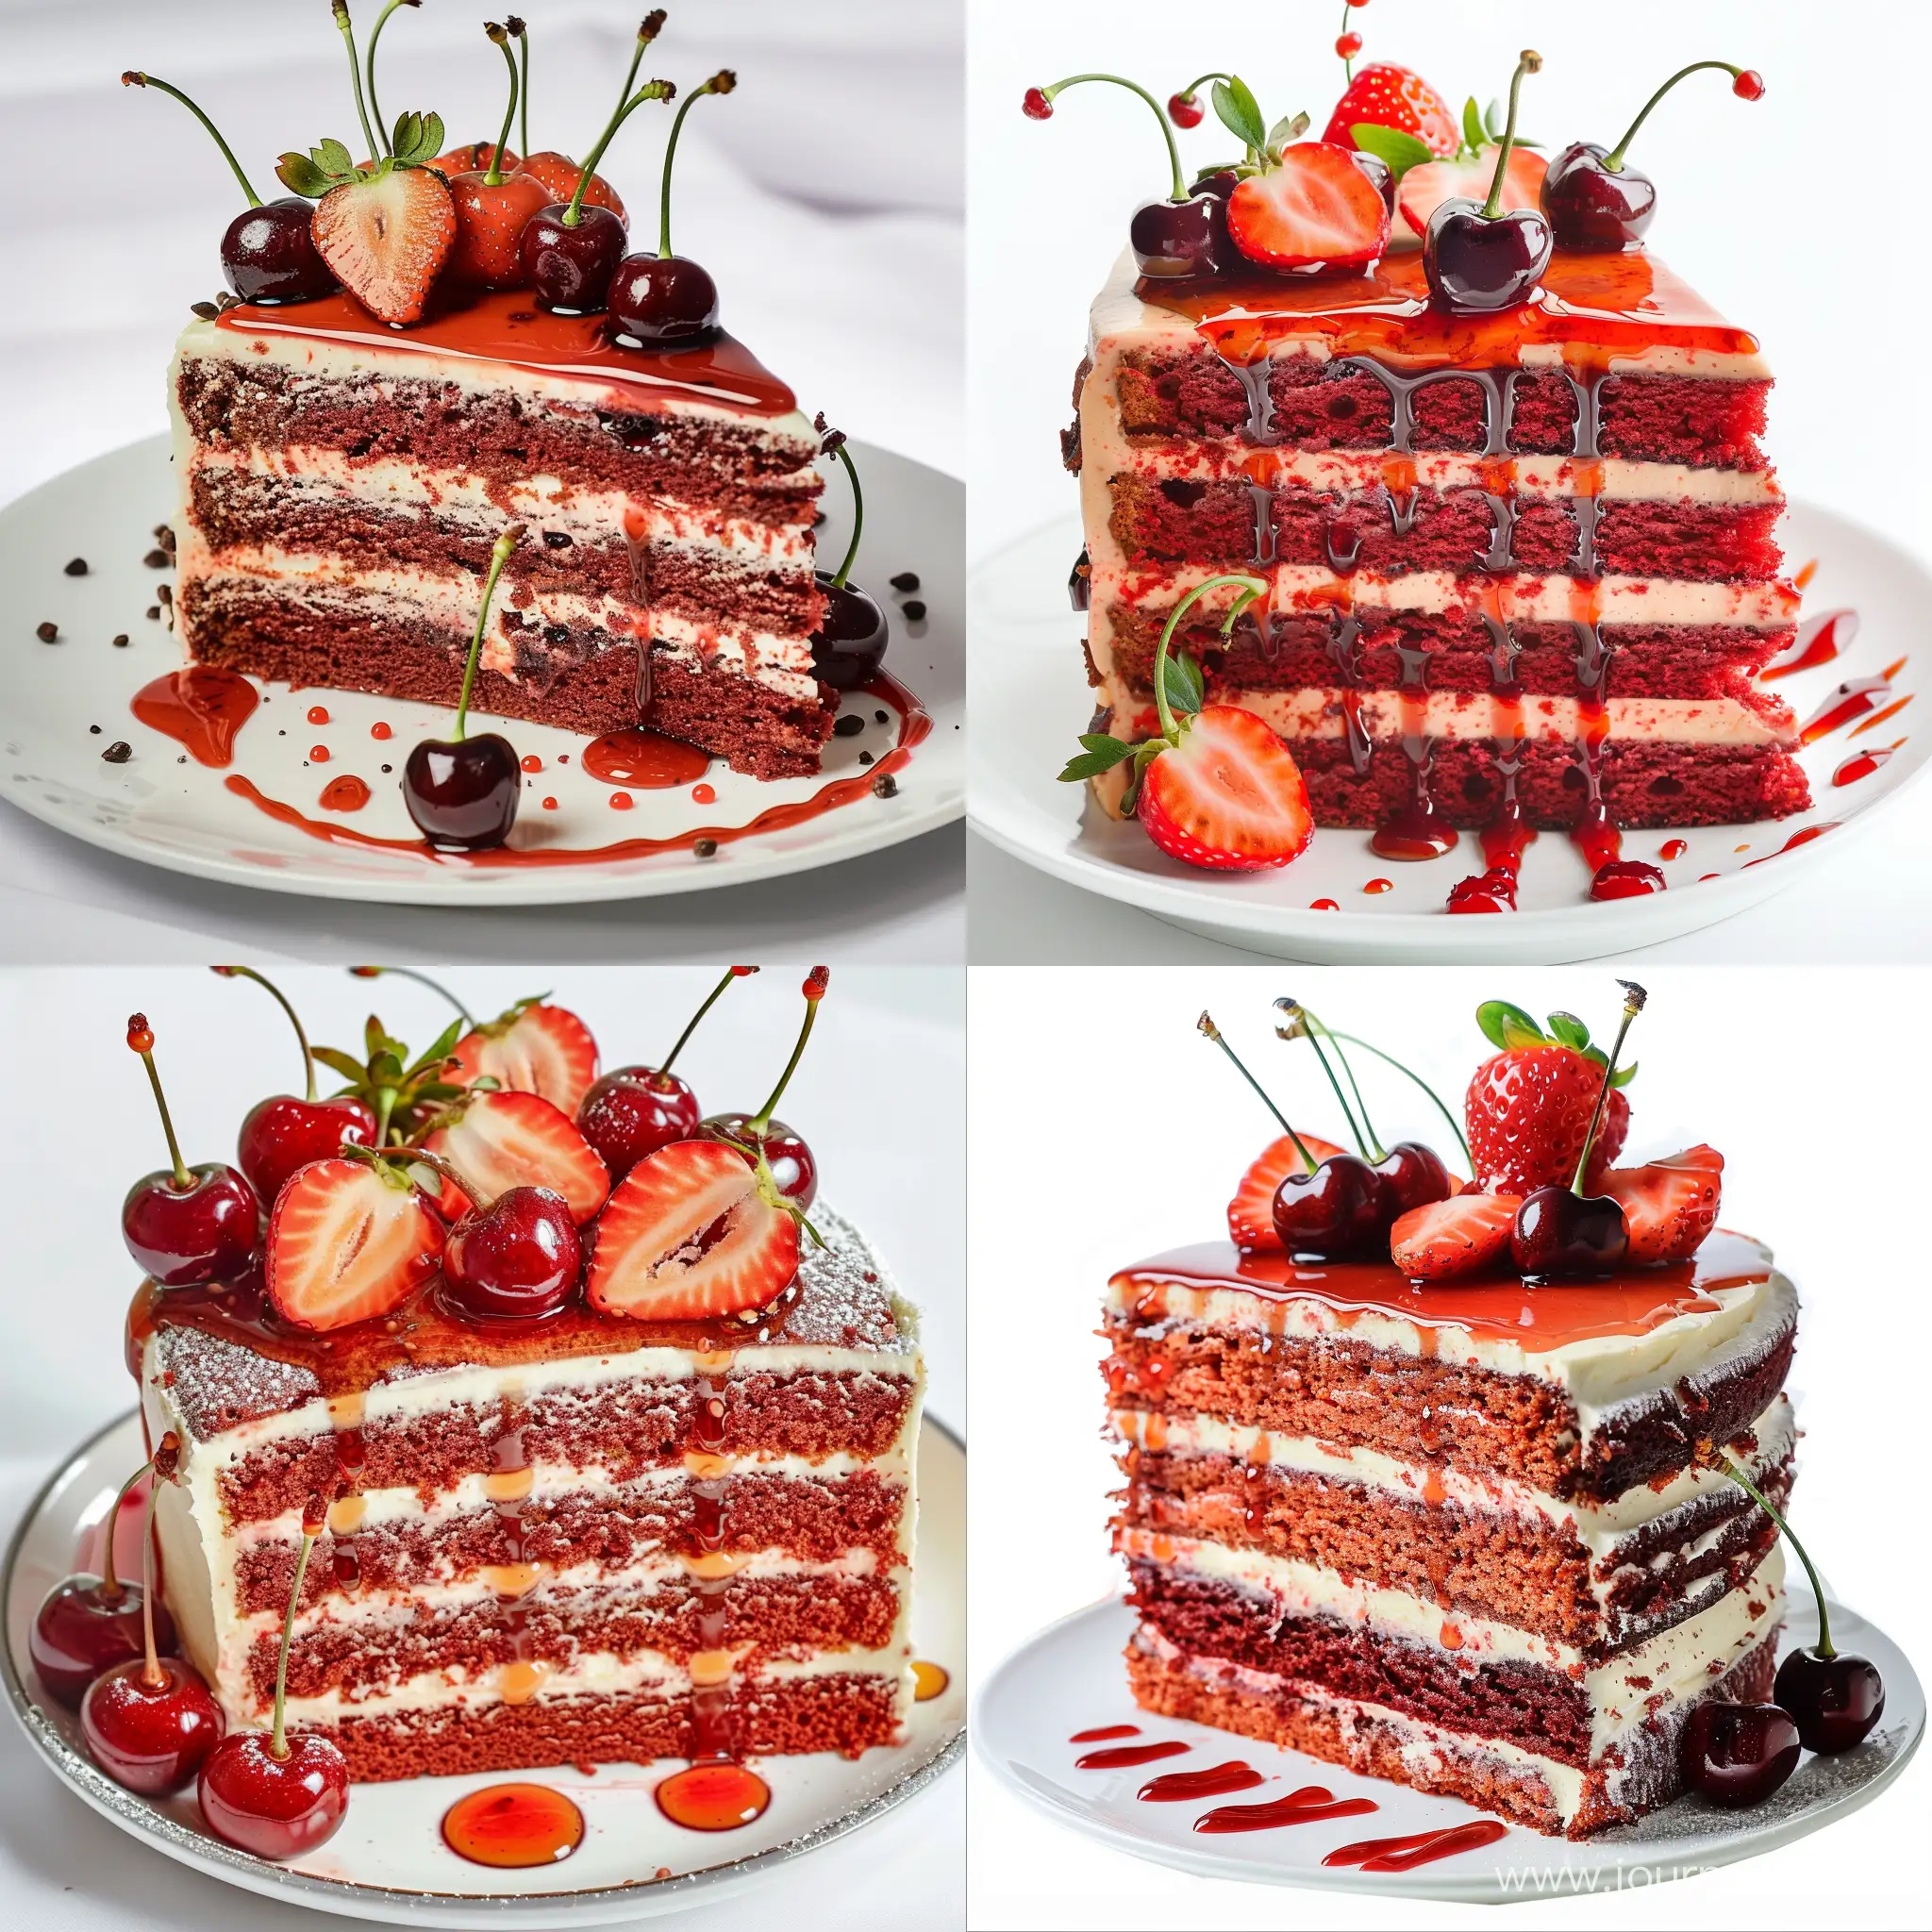 Fatia de bolo red velvet com 4 camadas em um prato branco, com decoração em cima do bolo com morango e uma calda de morango escorrida e cerejas com cabo enfeitando, o fundo da imagem deve ser branco 